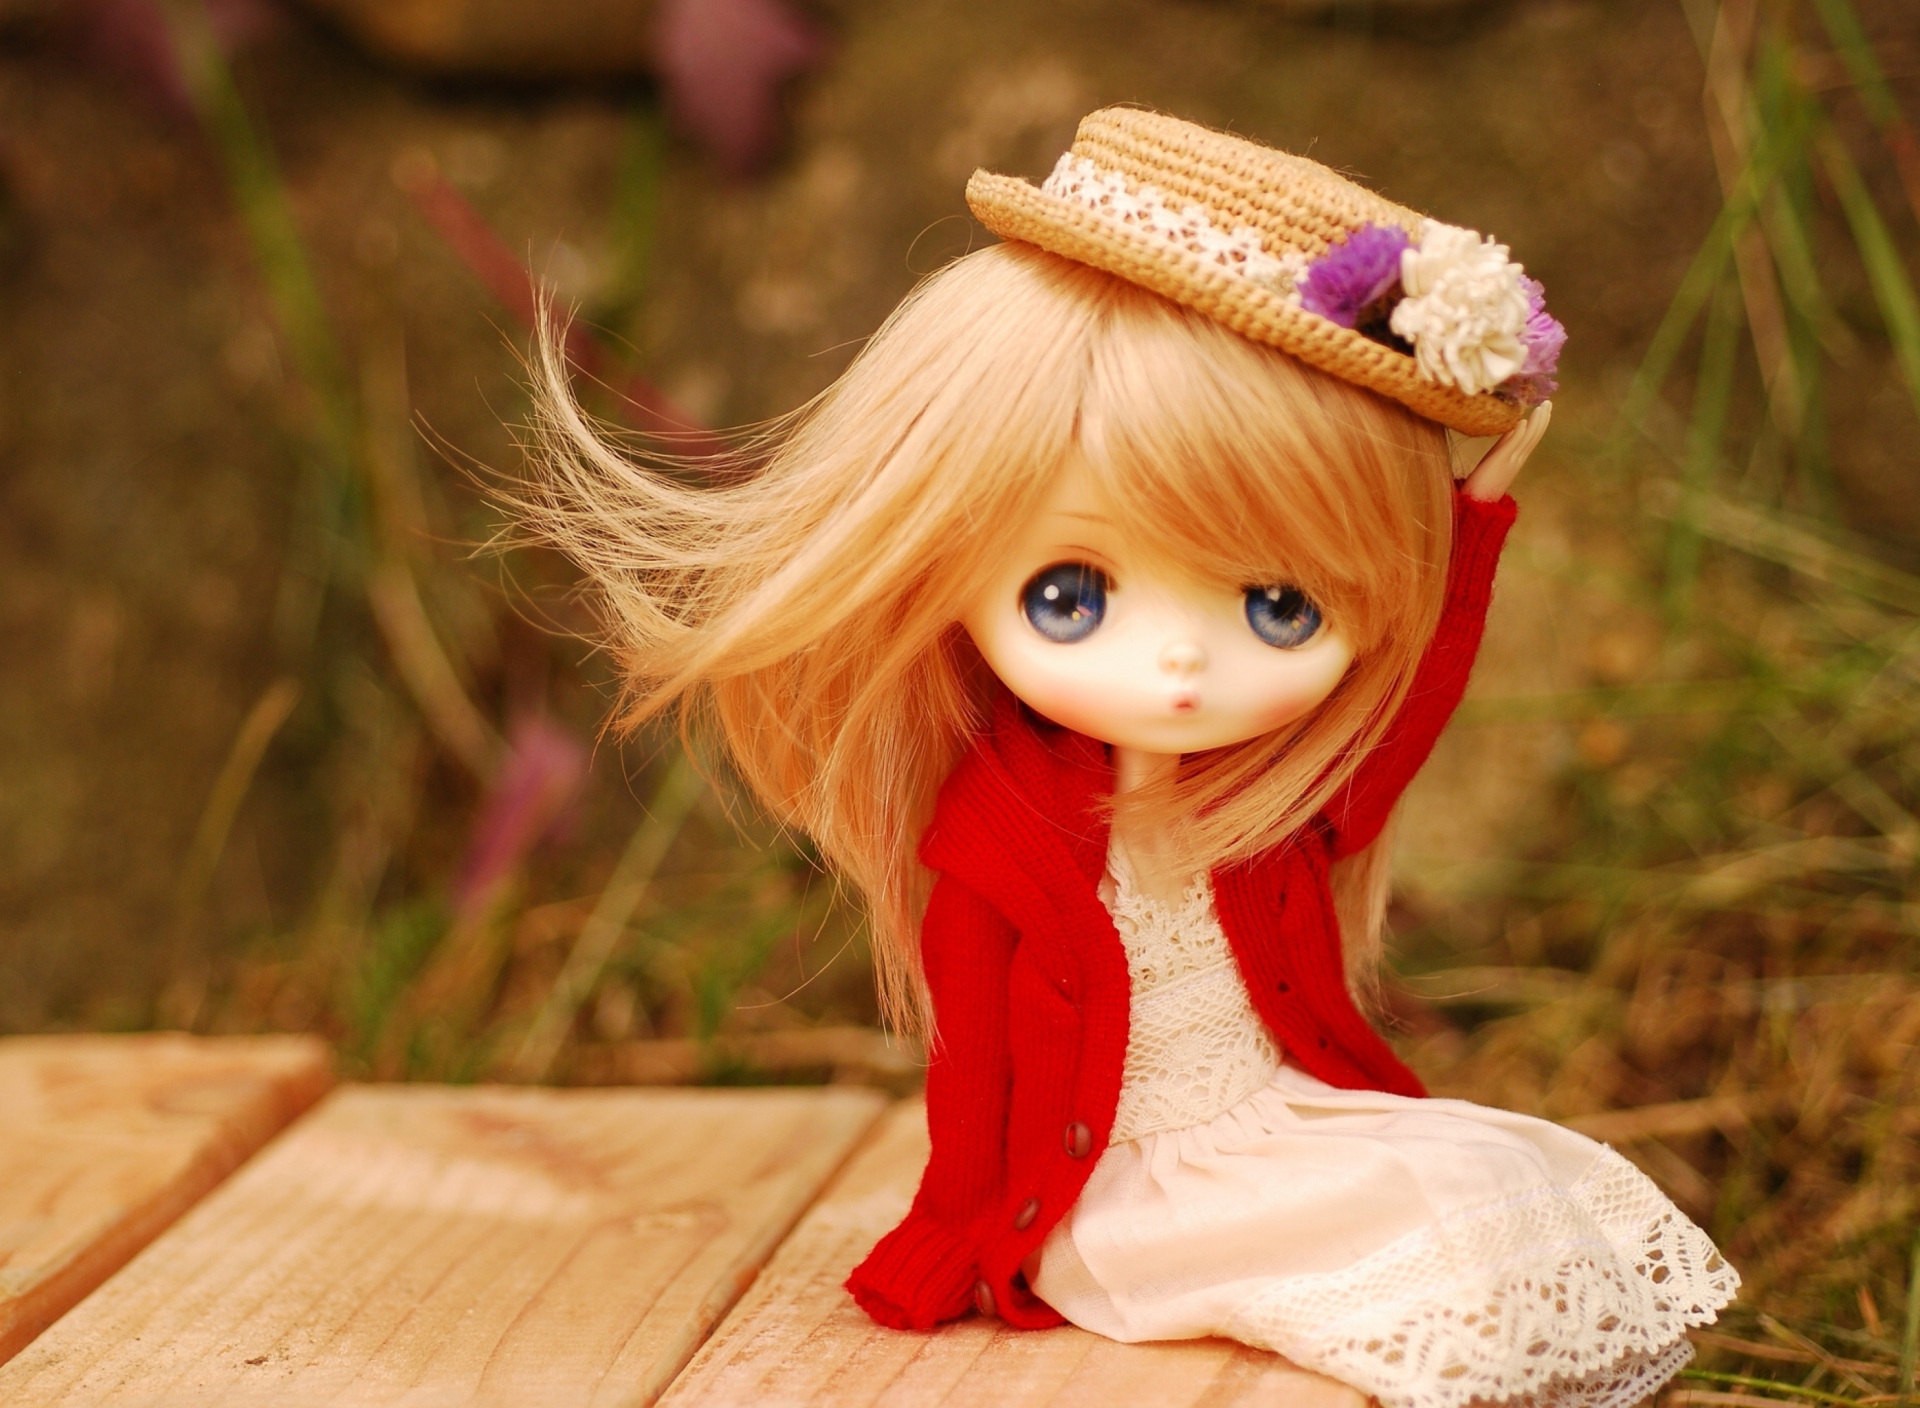 Обои Cute Doll Romantic Style 1920x1408